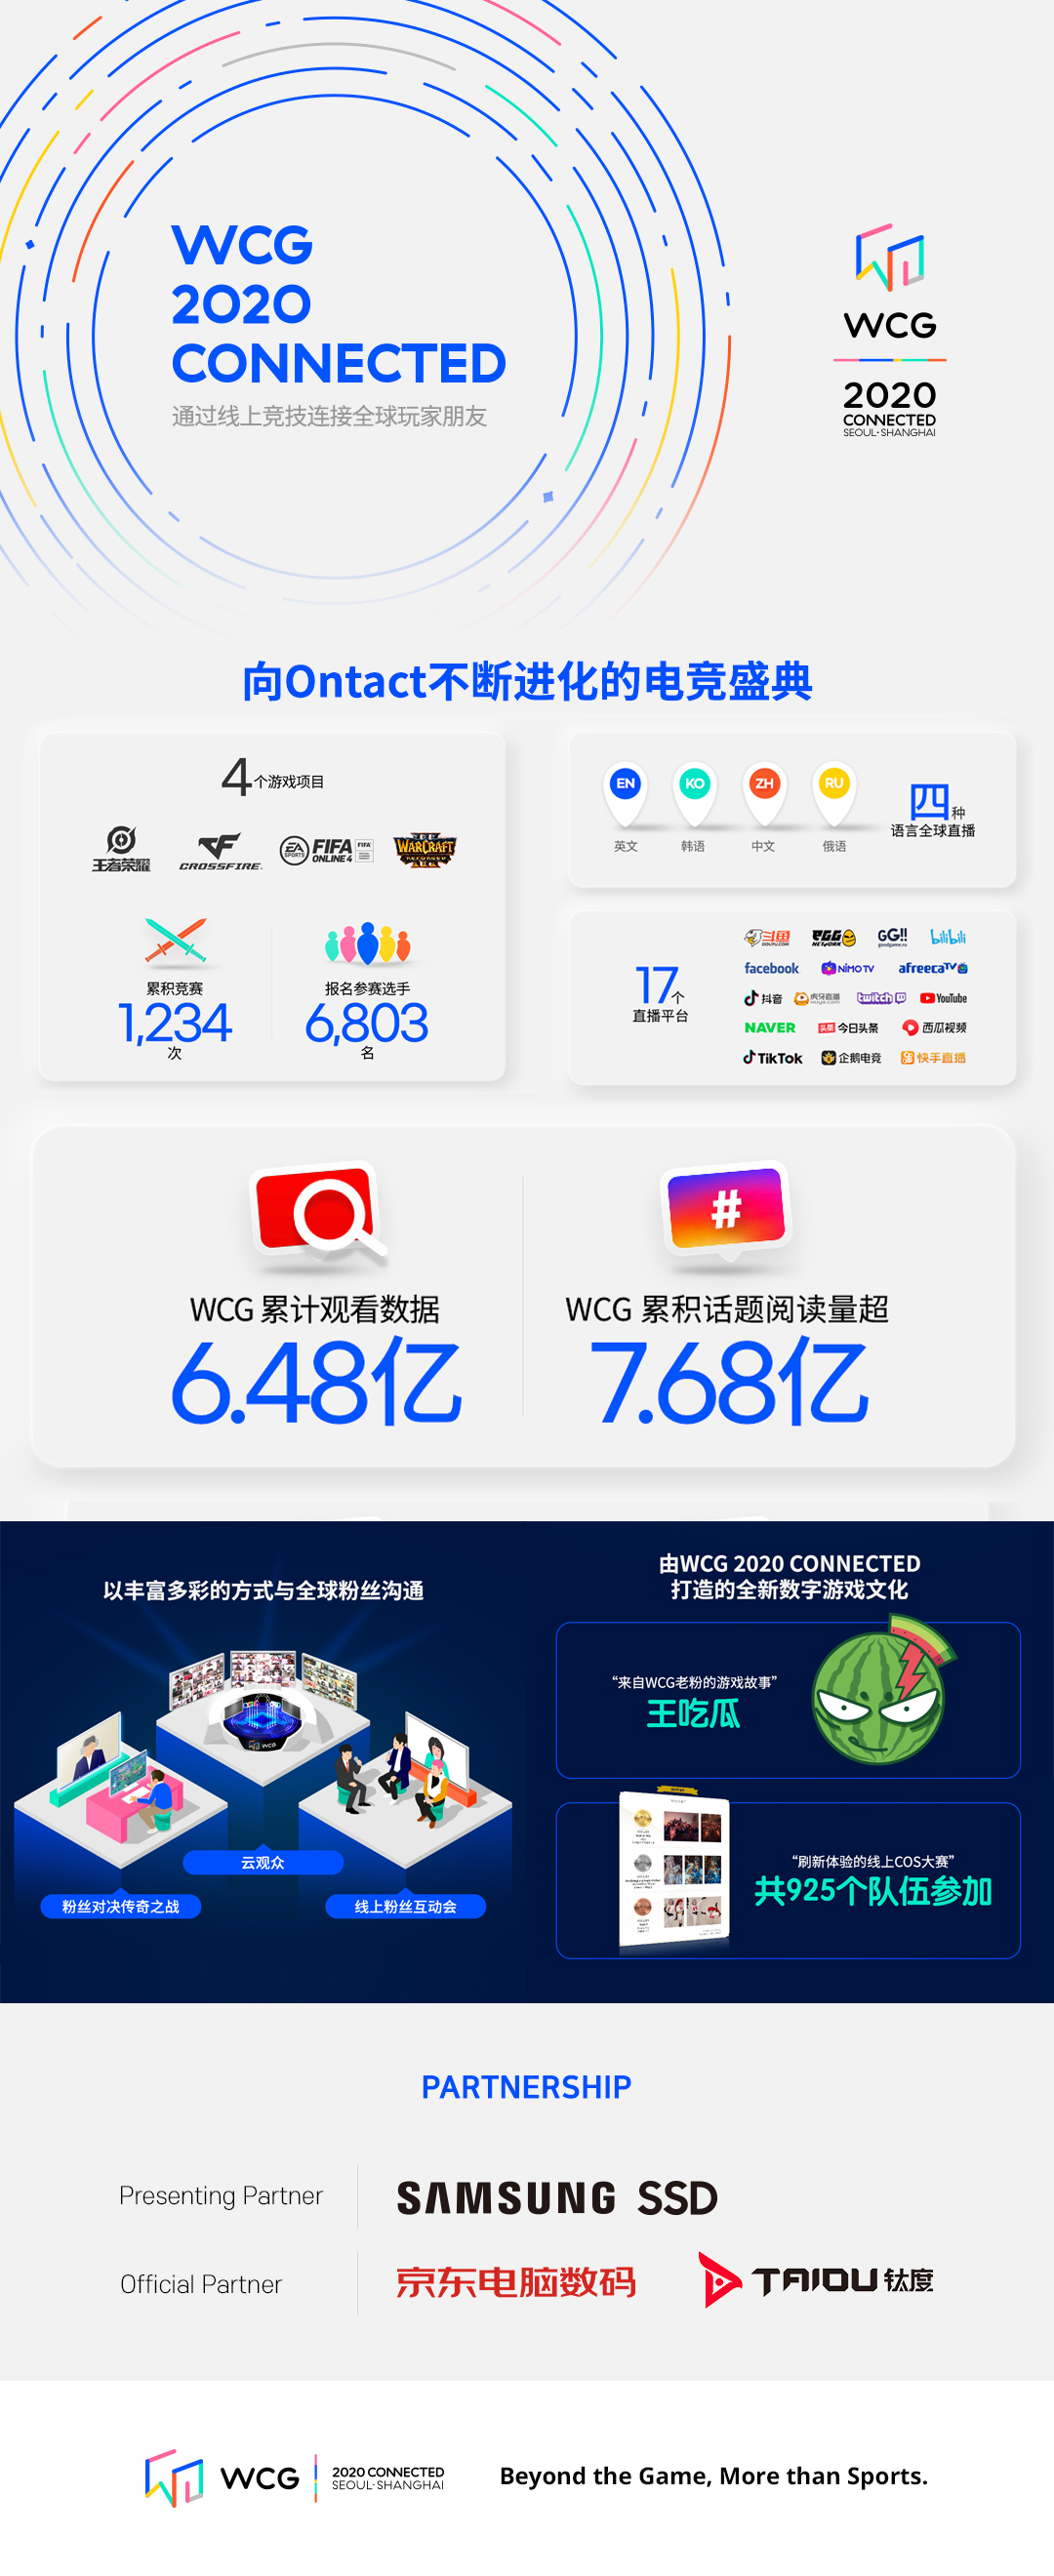 wcg 2020 info_cn_rev.jpg